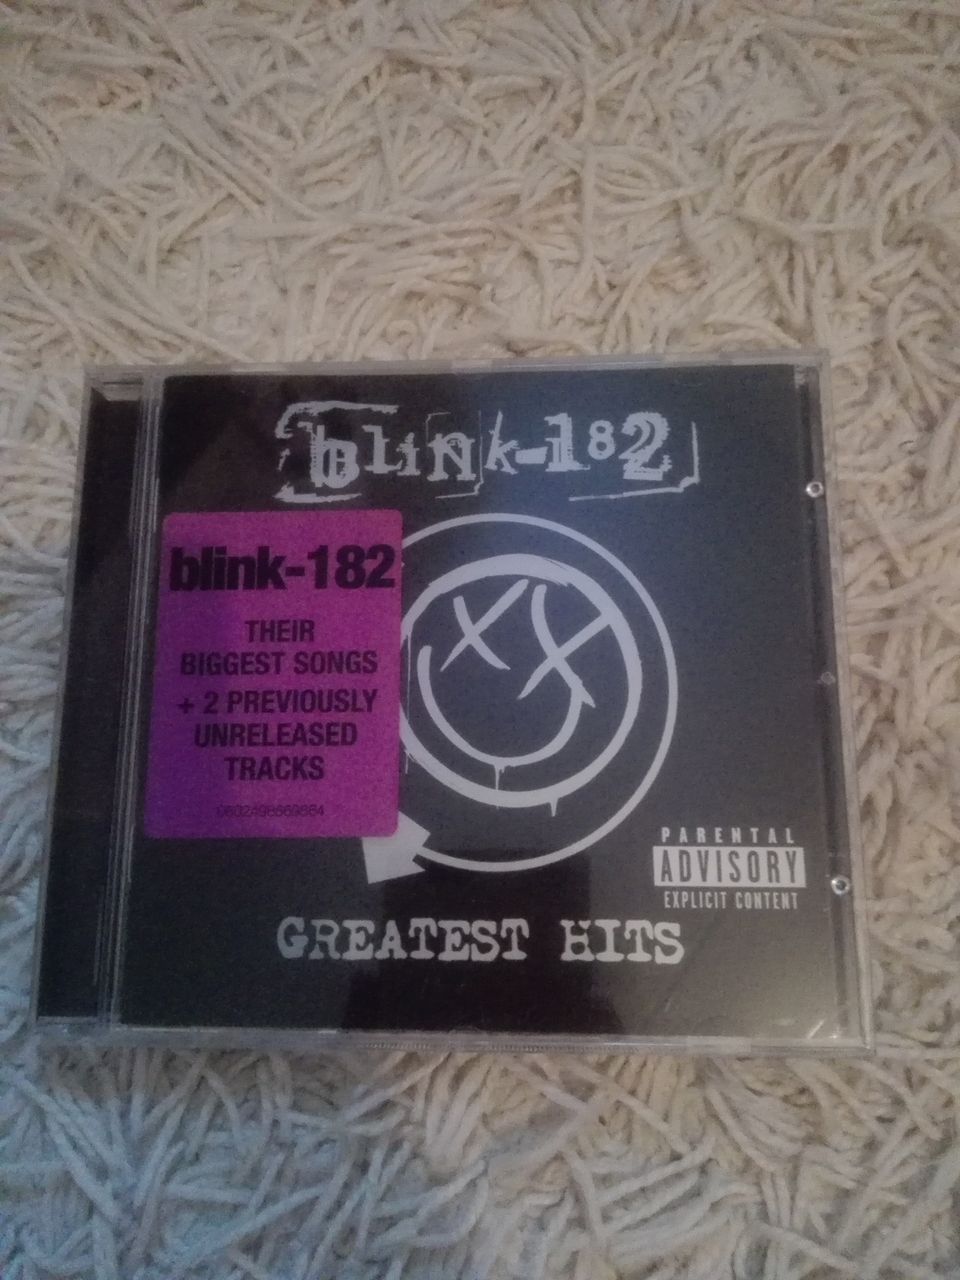 BLINK 182 "Greatest Hits" CD